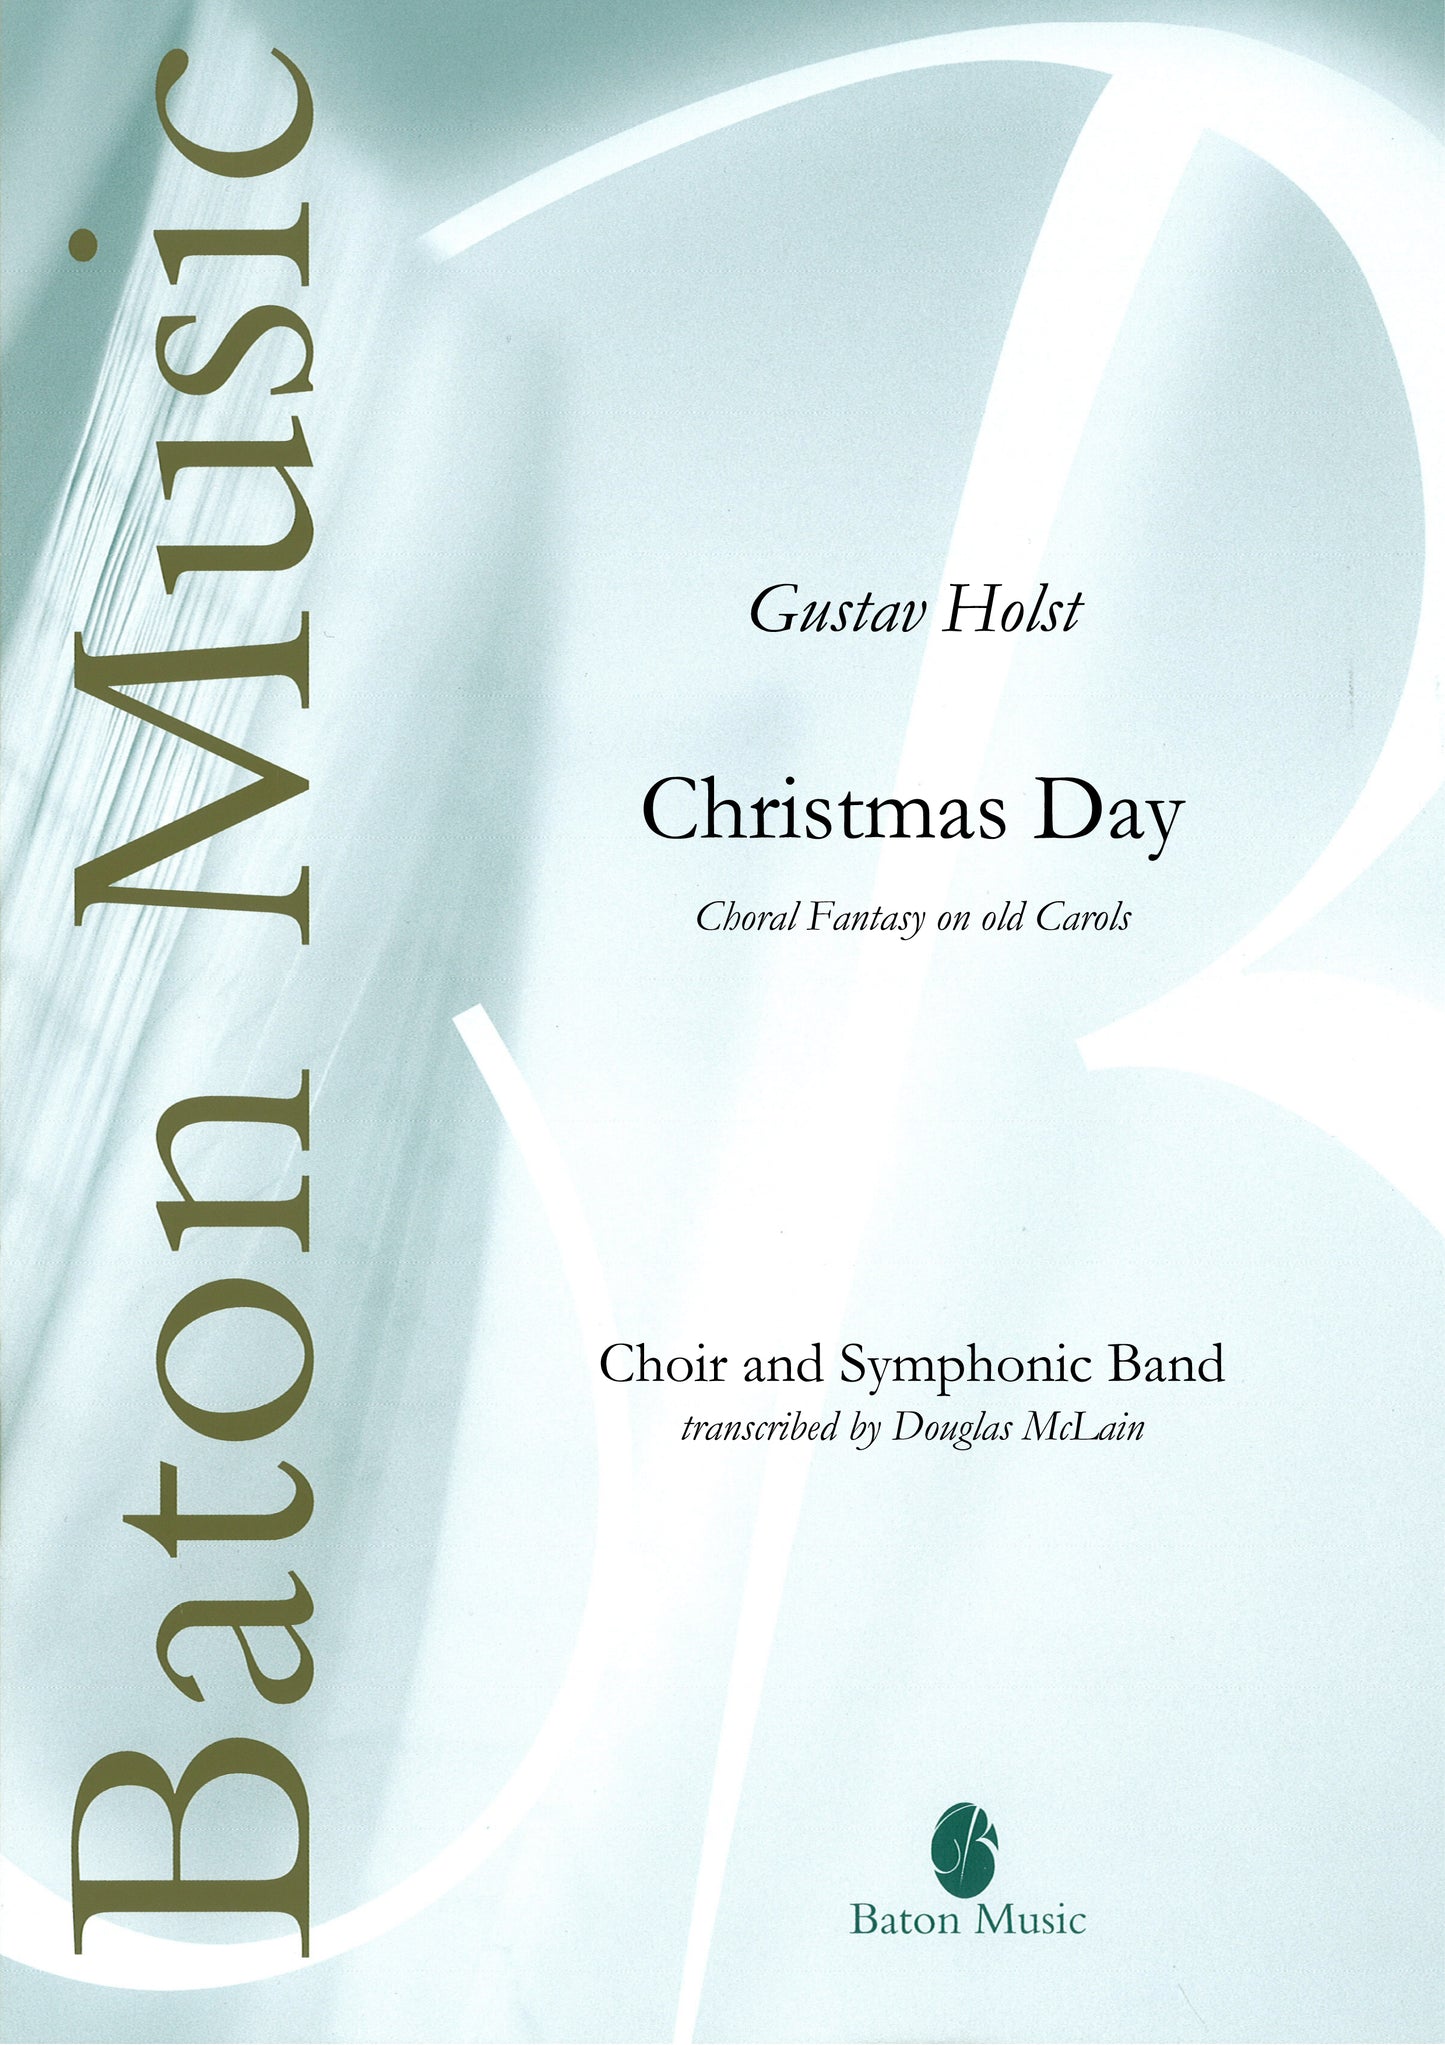 Christmas Day (Choral Fantasy on Old Carols) - Gustav Holst